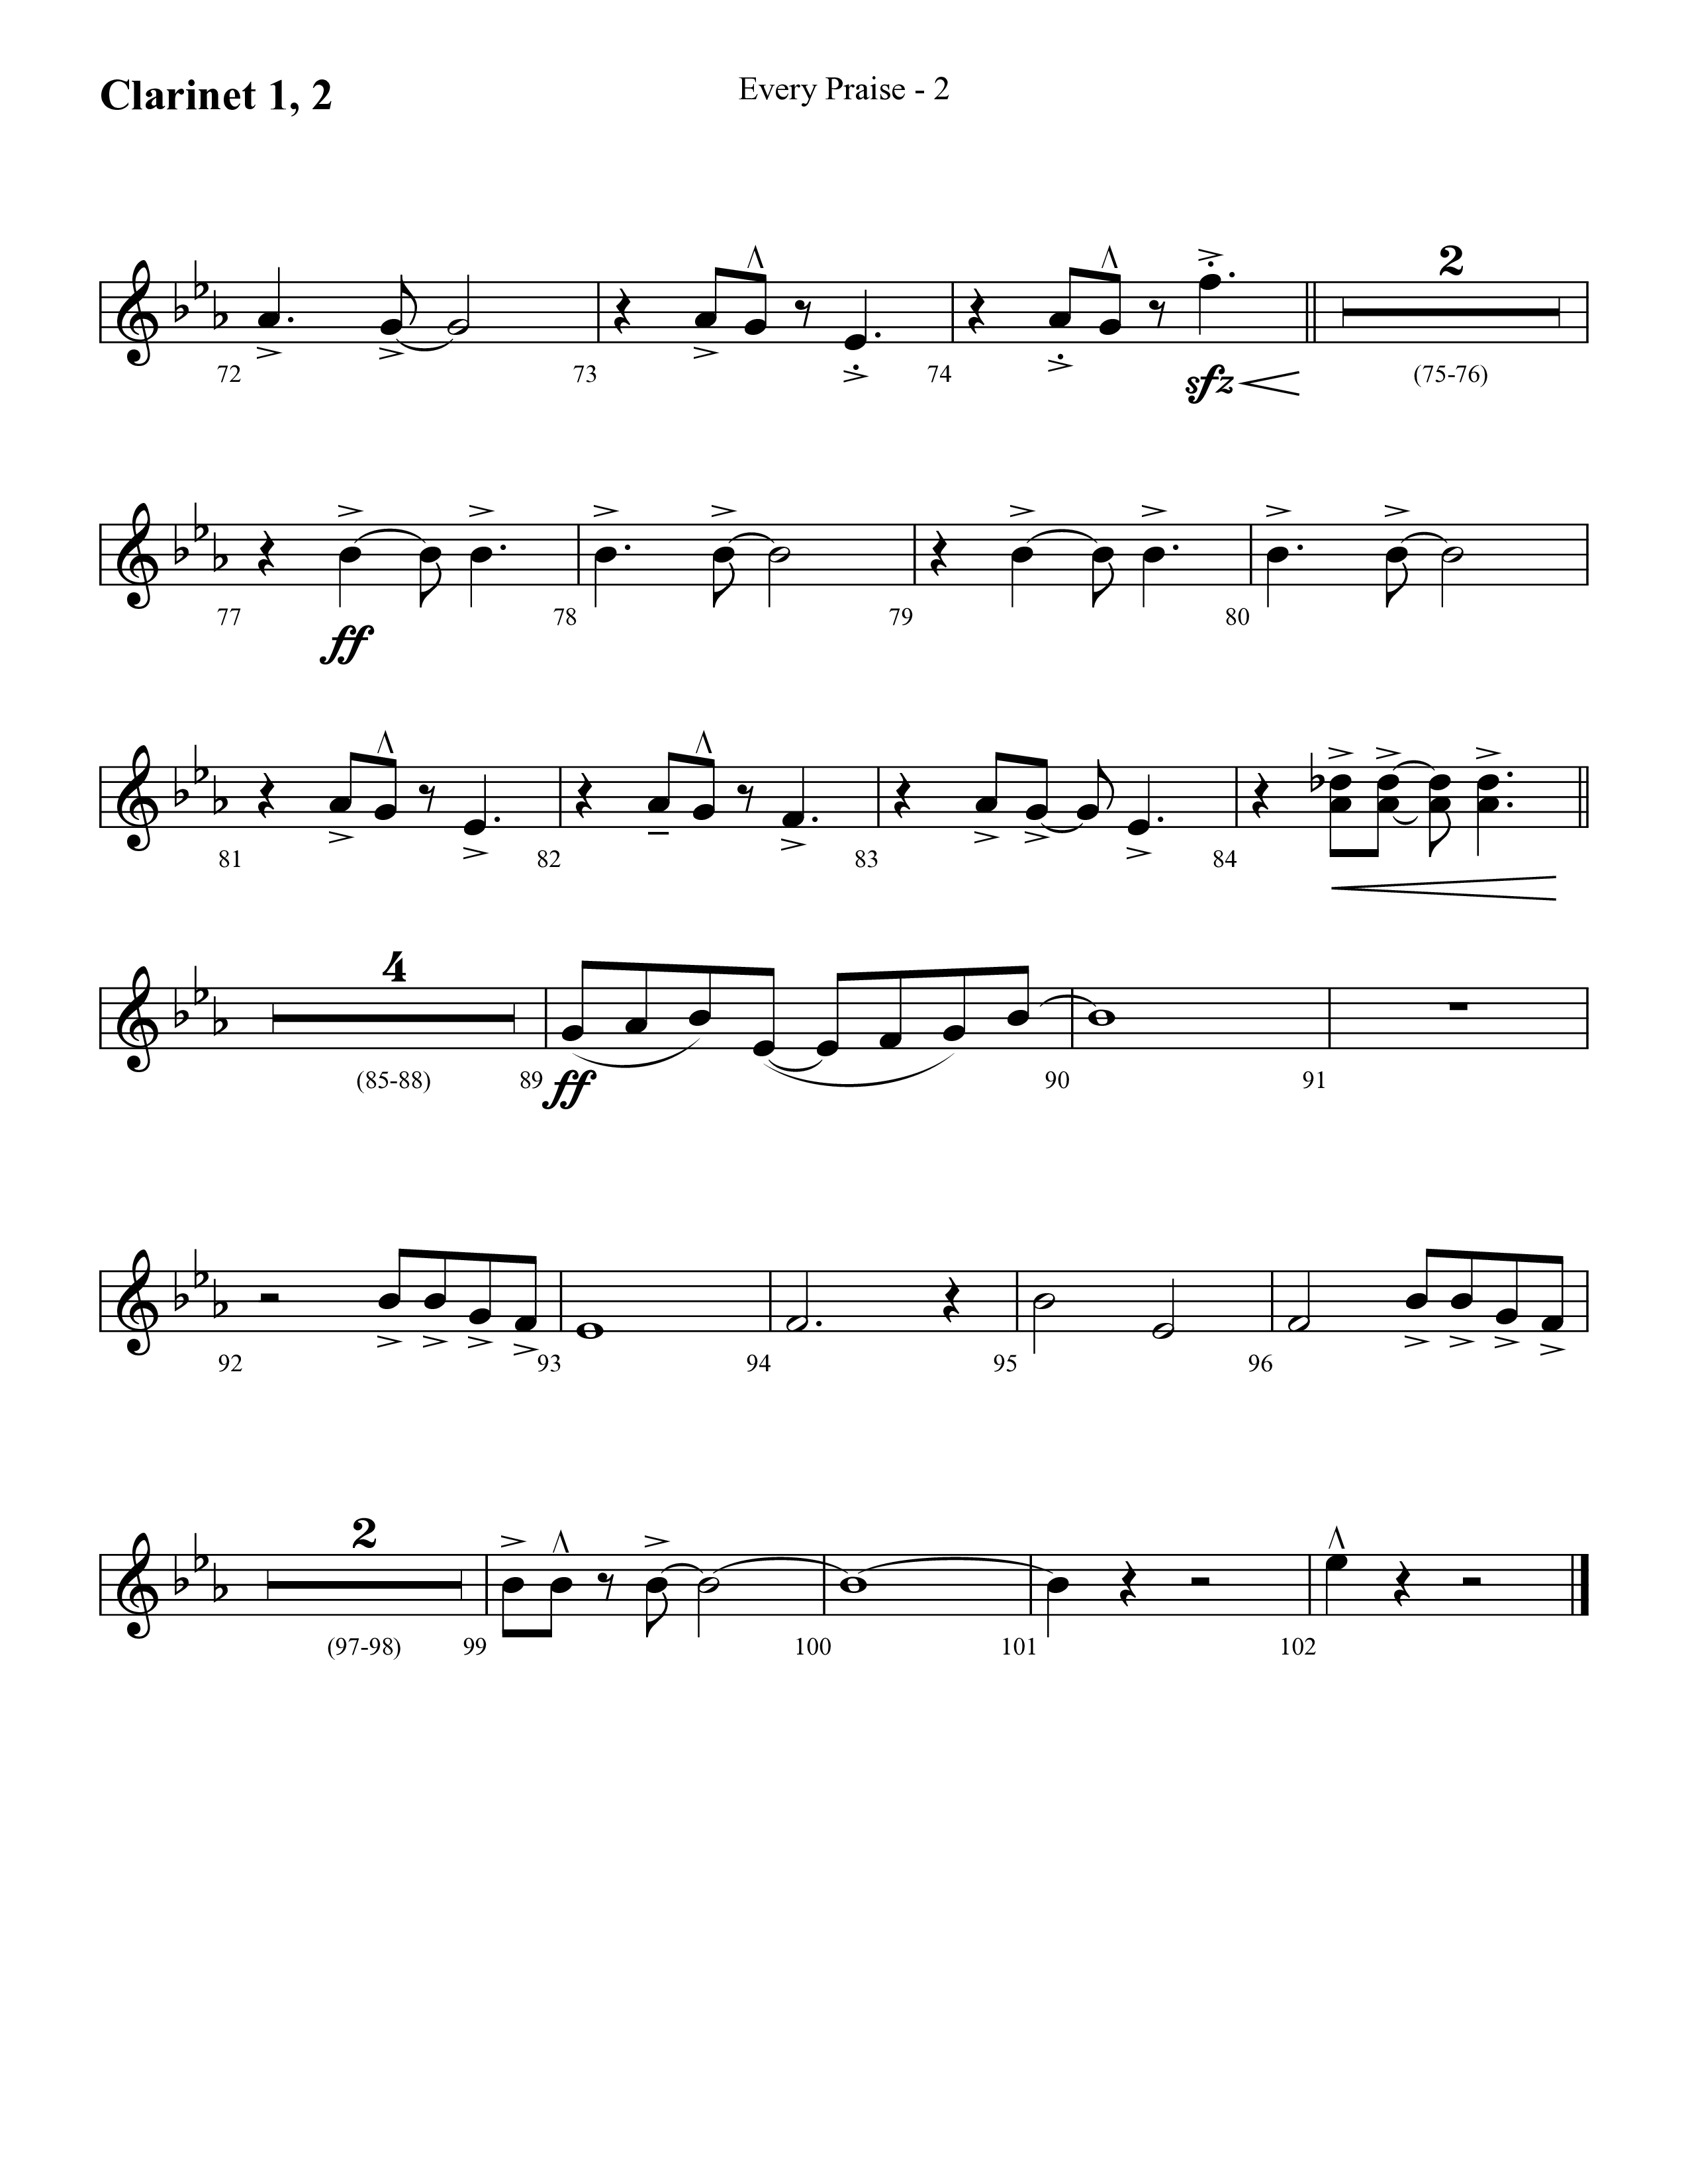 Every Praise (Choral Anthem SATB) Clarinet 1/2 (Lifeway Choral / Arr. Cliff Duren)